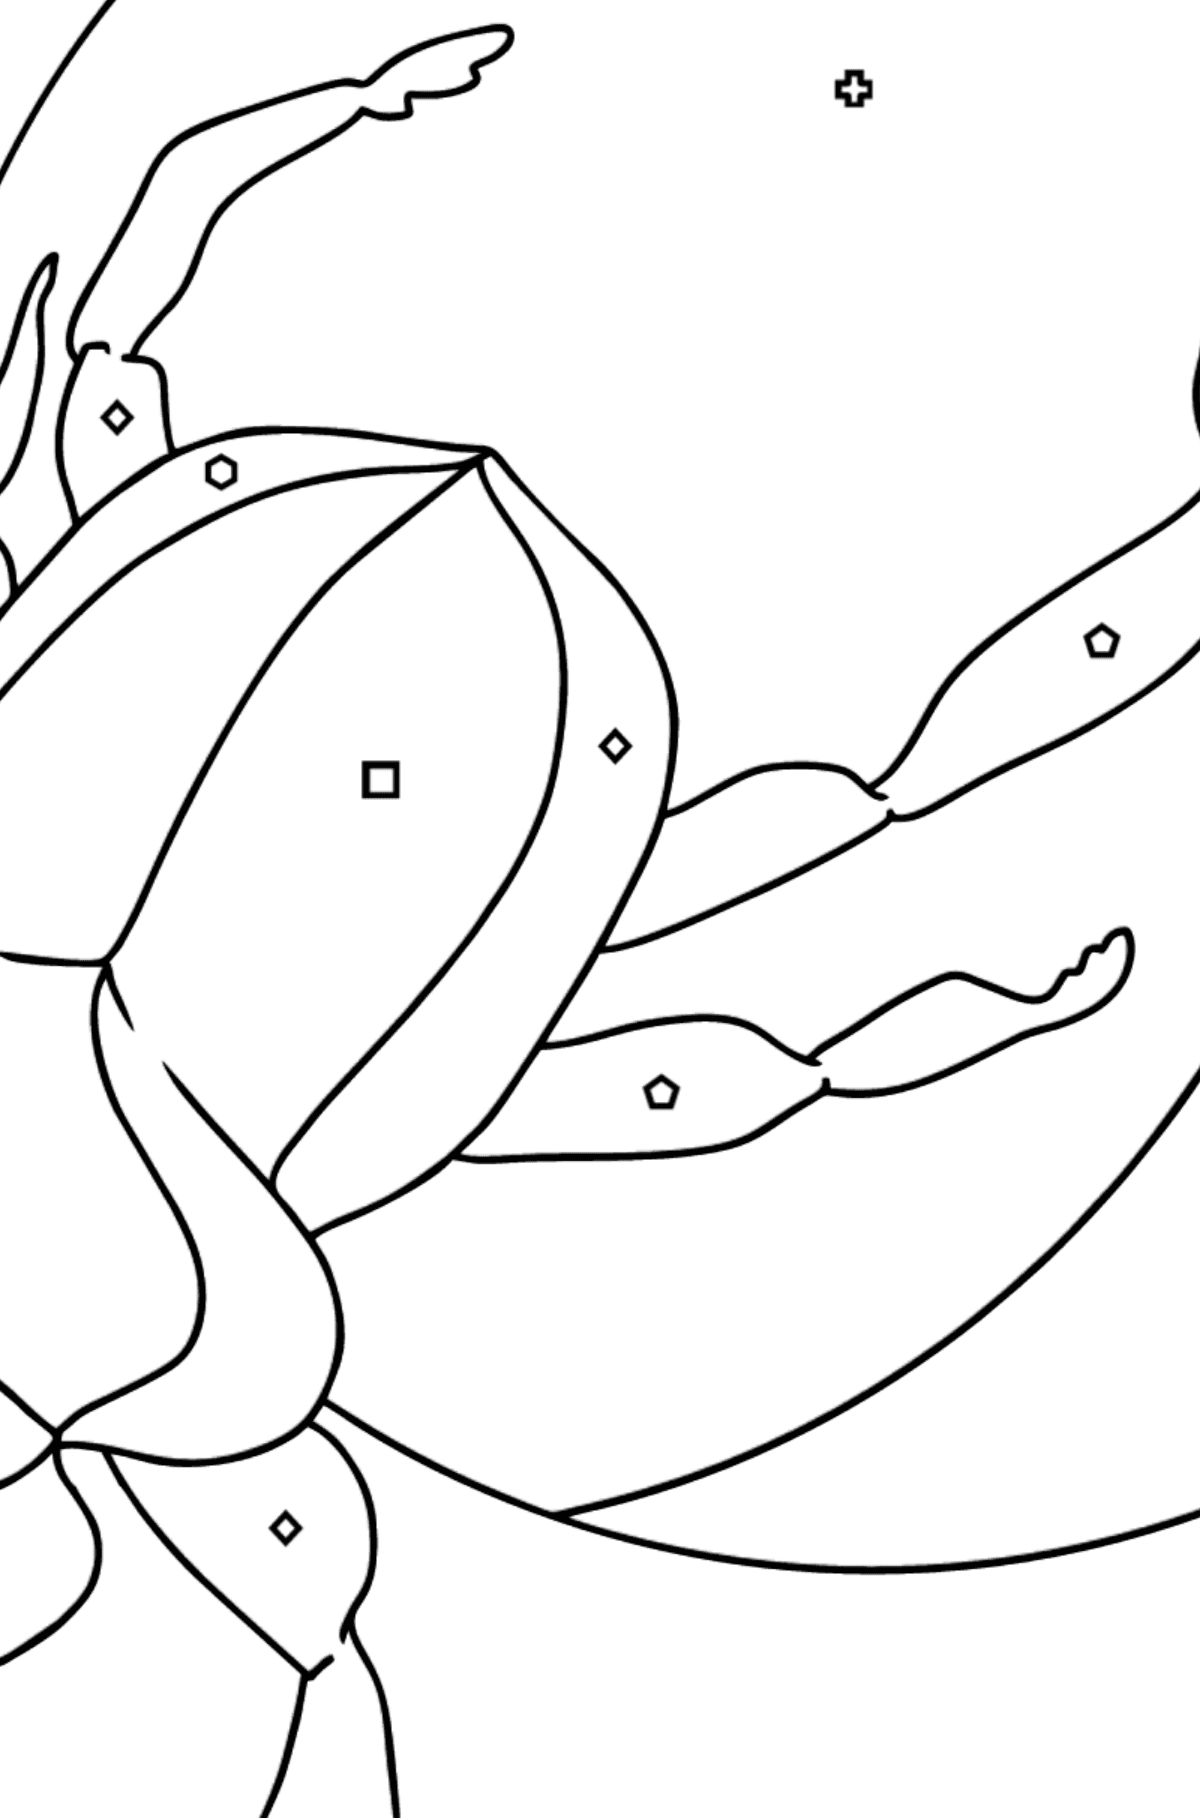 Tegning til farvning Scarab bille - Farvelægning af geometriske figurer for børn